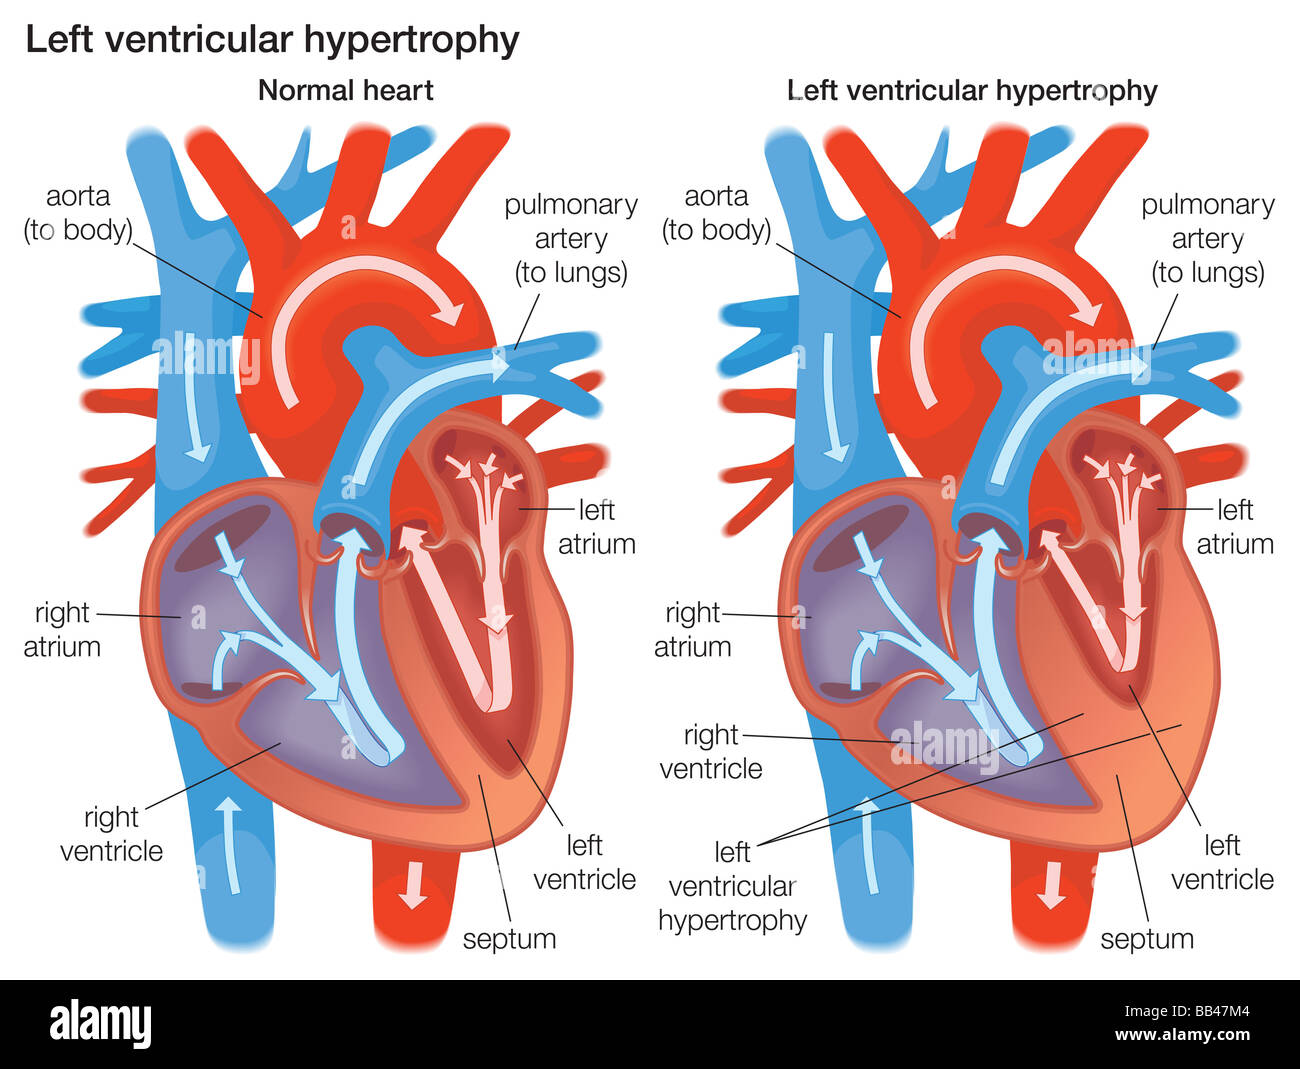 Comparando la sección transversal de la pared ventricular izquierda del corazón normal a una pared ventricular izquierda que ha experimentado la hipertrofia. Foto de stock